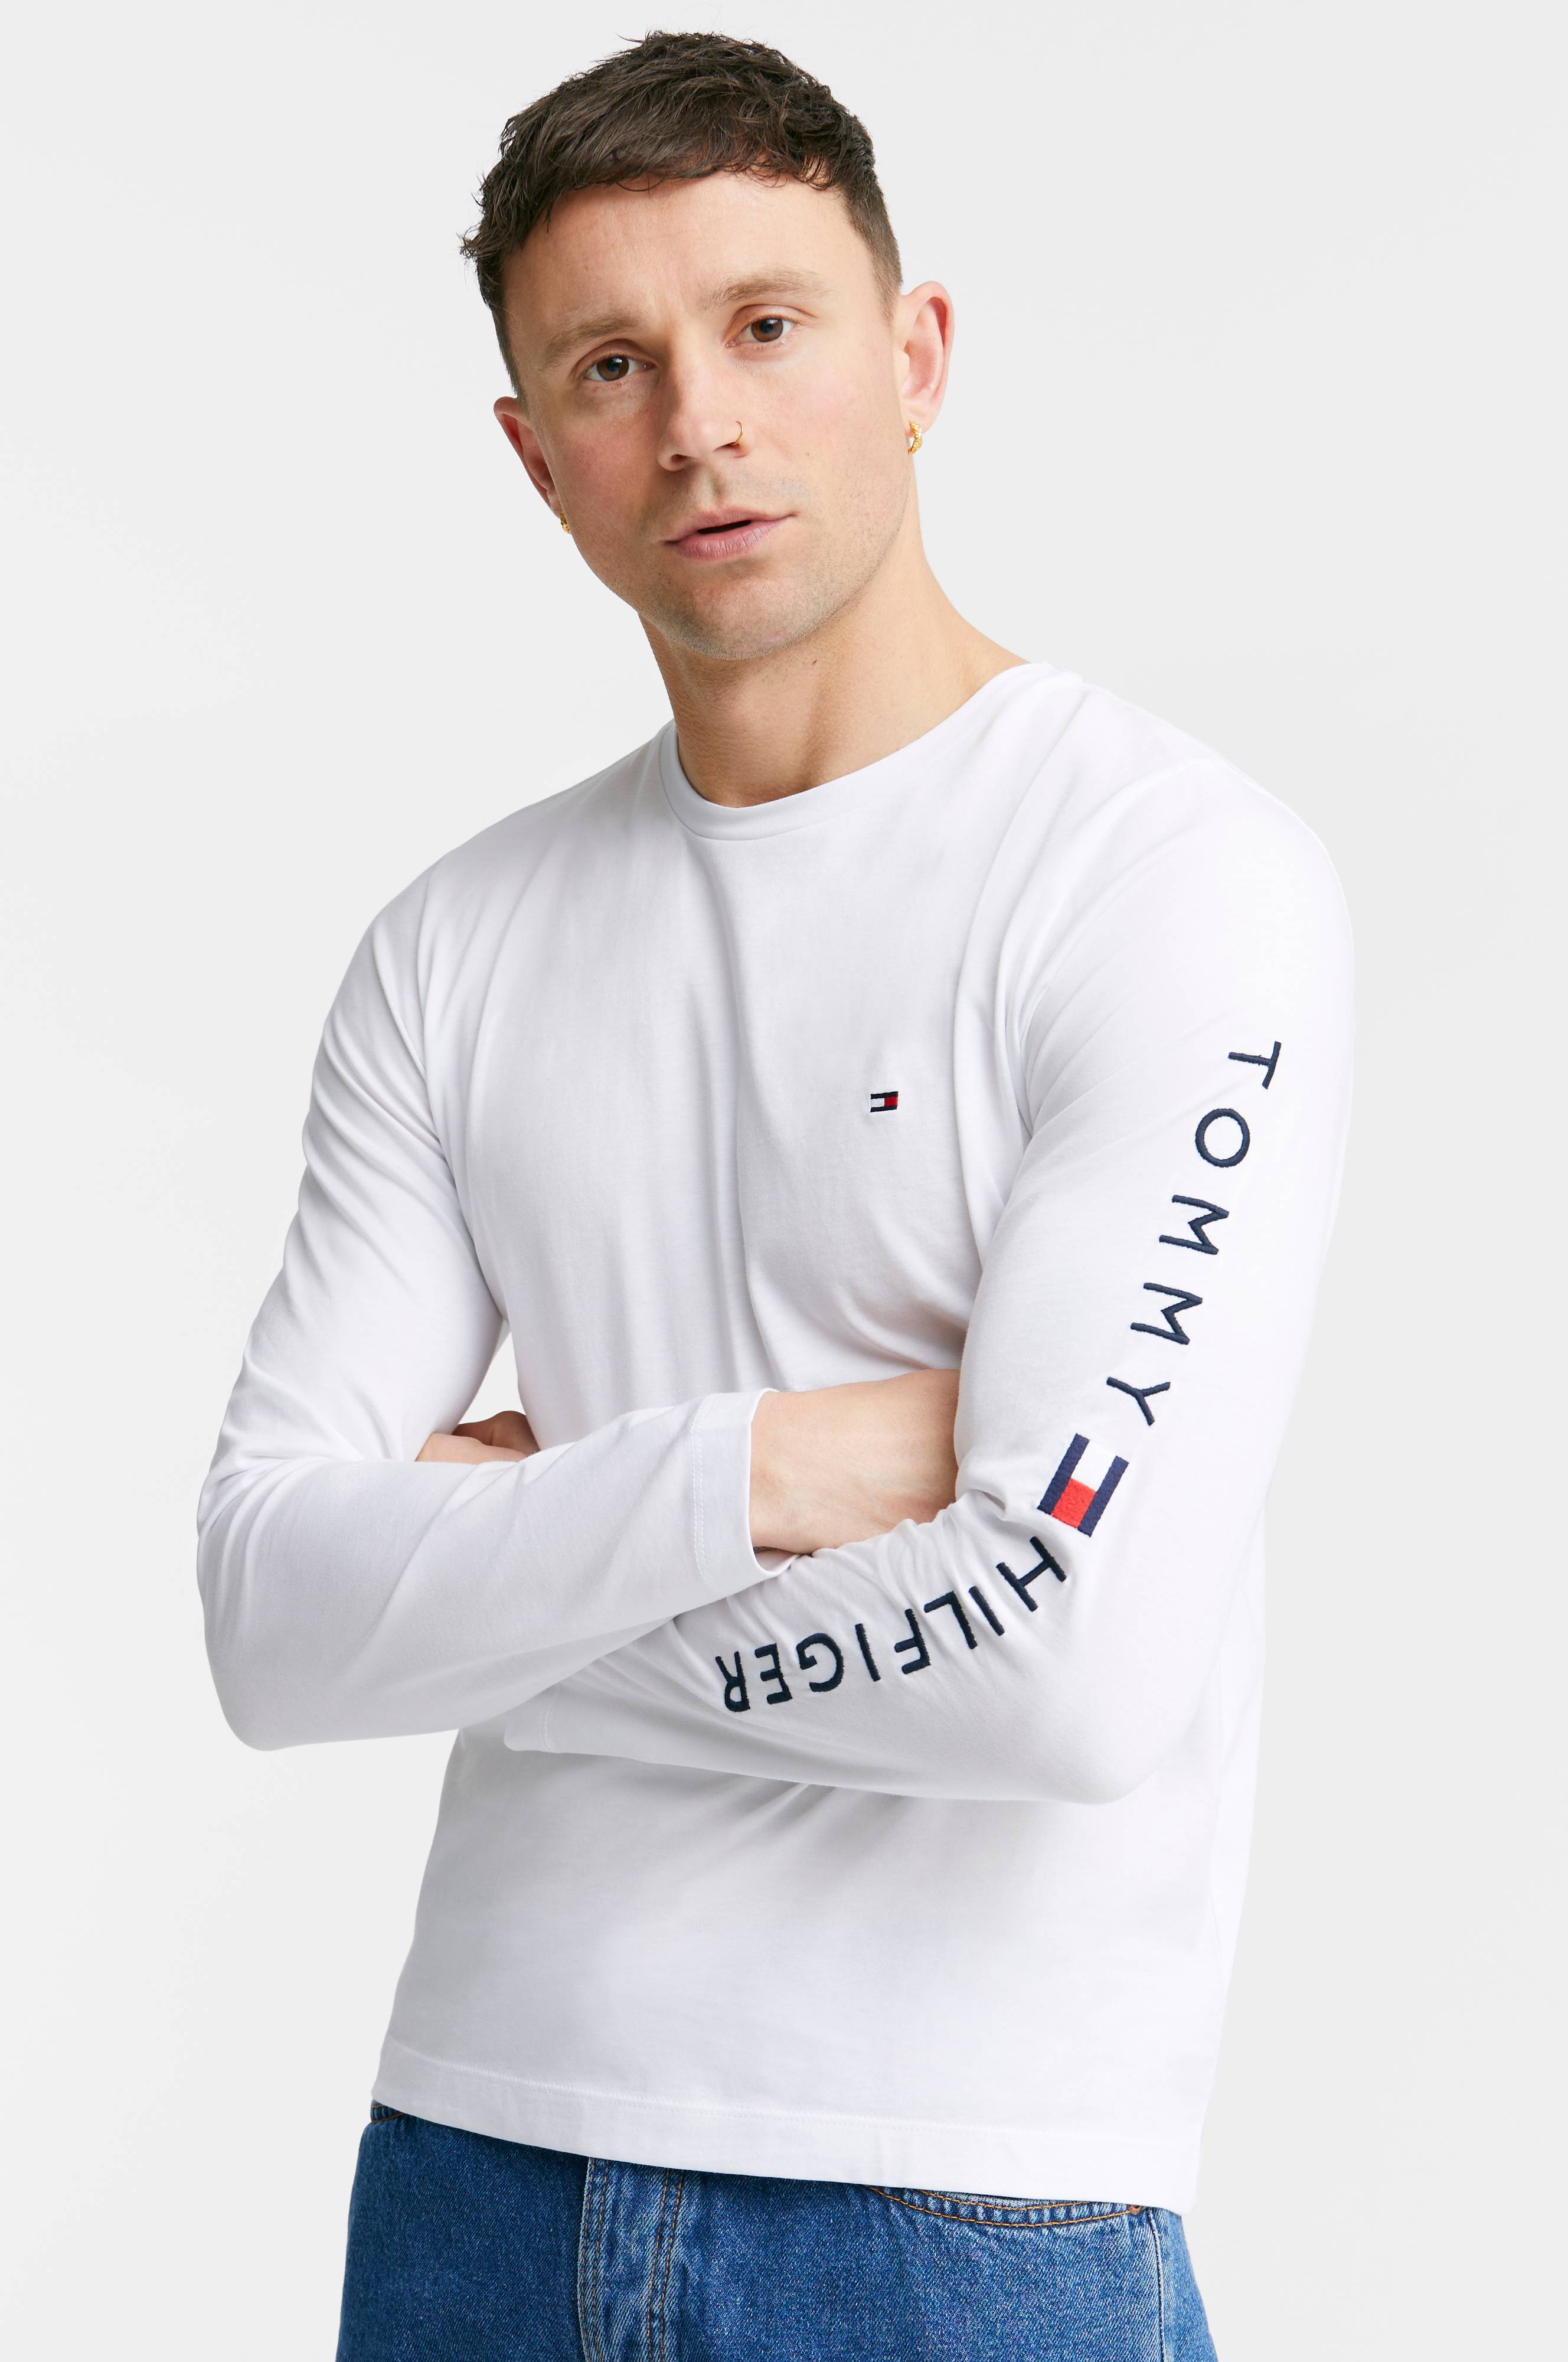 Stjerne modstand Adgang Tommy Hilfiger Langærmet t-shirt Tommy Logo Long Sleeve - Hvid - Langærmede  T-shirts | Ellos.dk